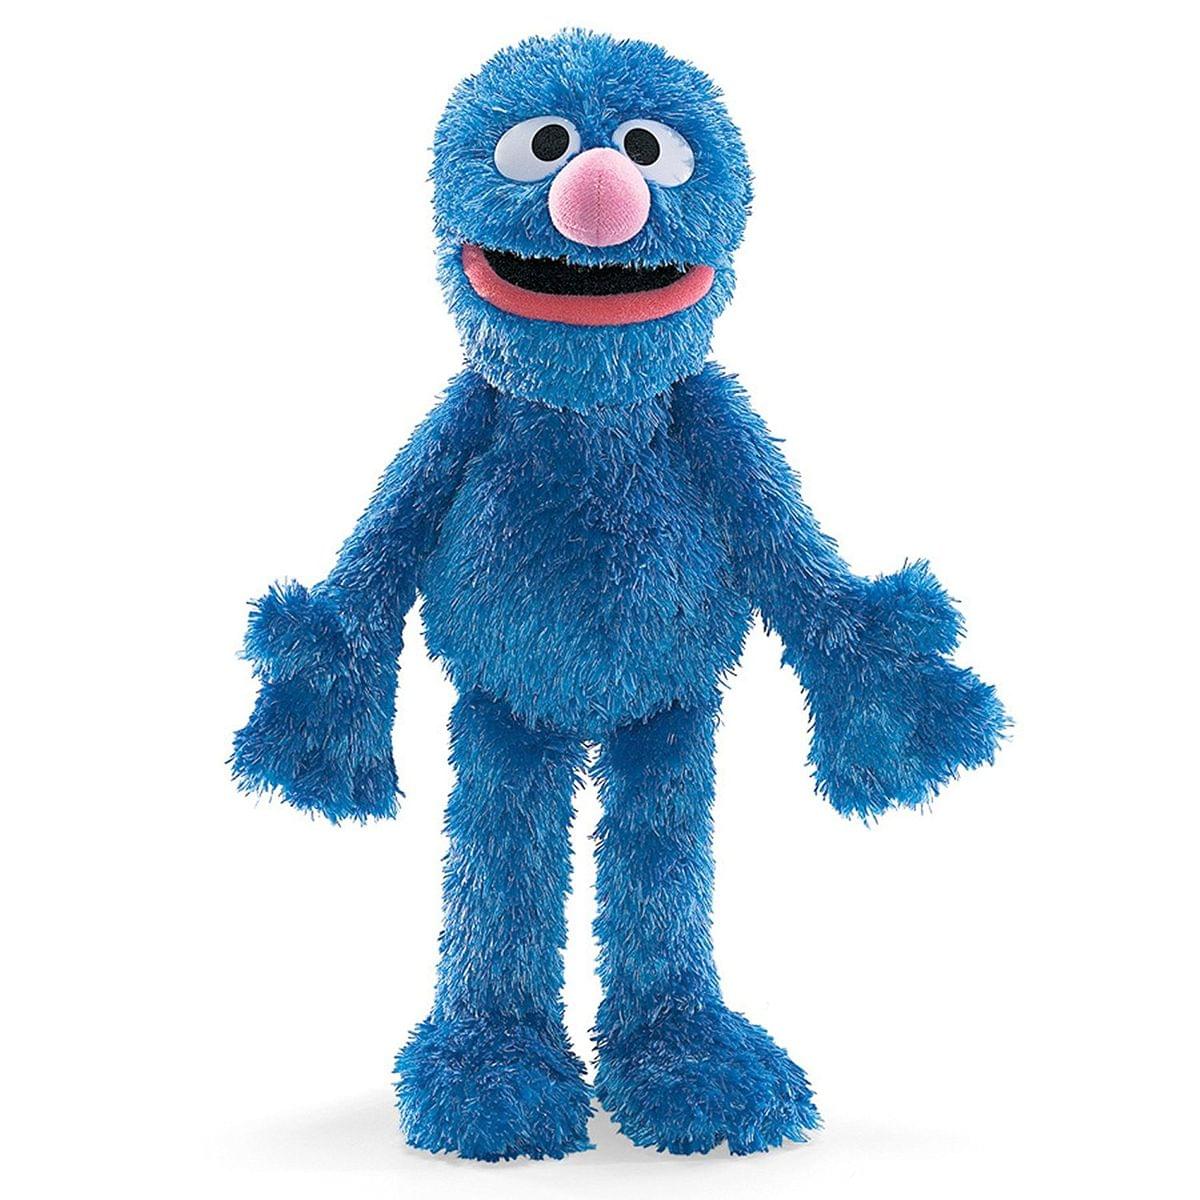 Sesame Street 14.5" Grover Character Plush